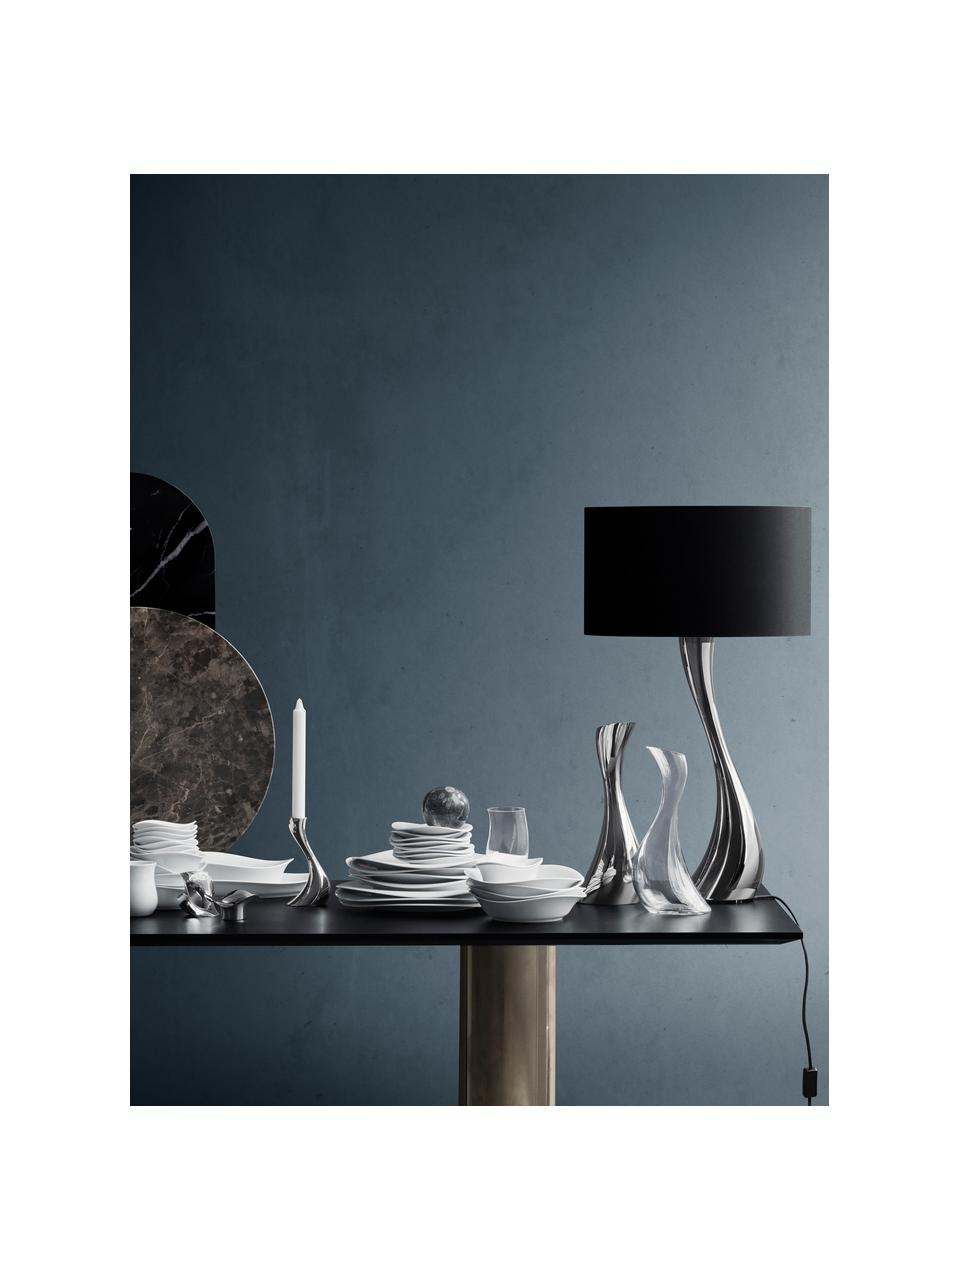 Lampada da tavolo grande in acciaio inossidabile Cobra, Paralume: cotone, Struttura: acciaio inossidabile luci, Argentato, nero, Ø 35 x Alt. 61 cm